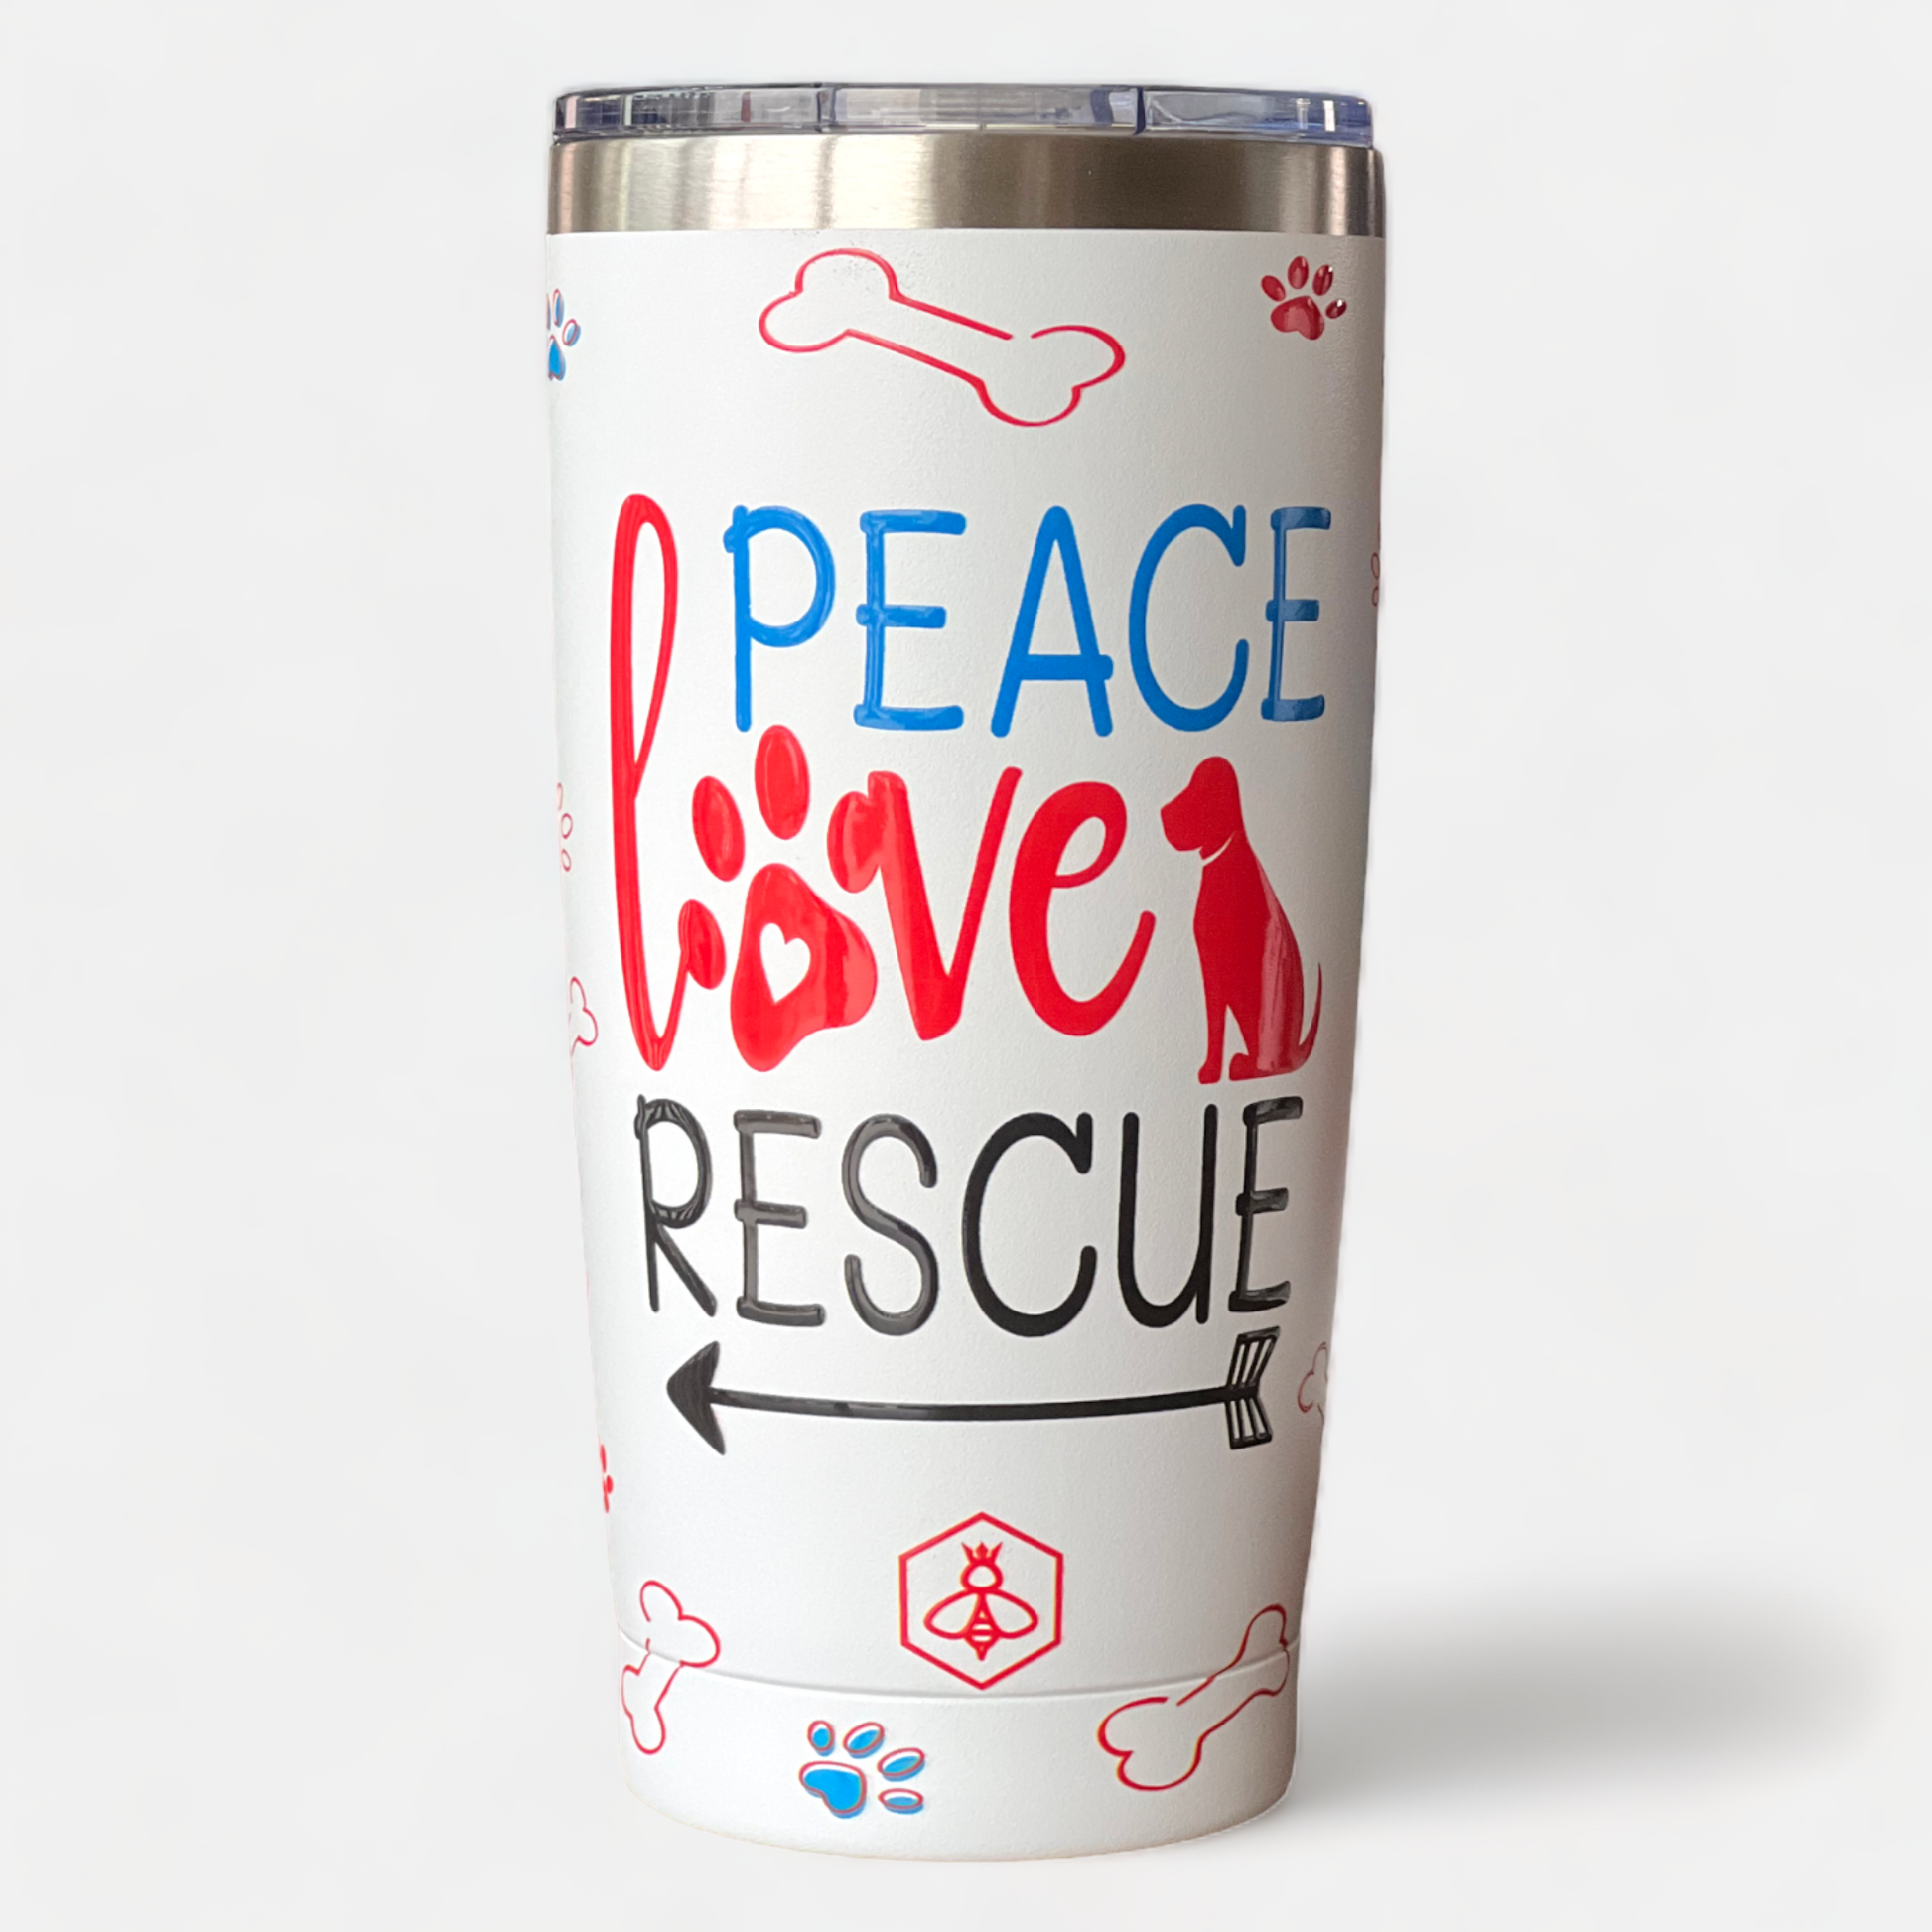 Peace Love Rescue